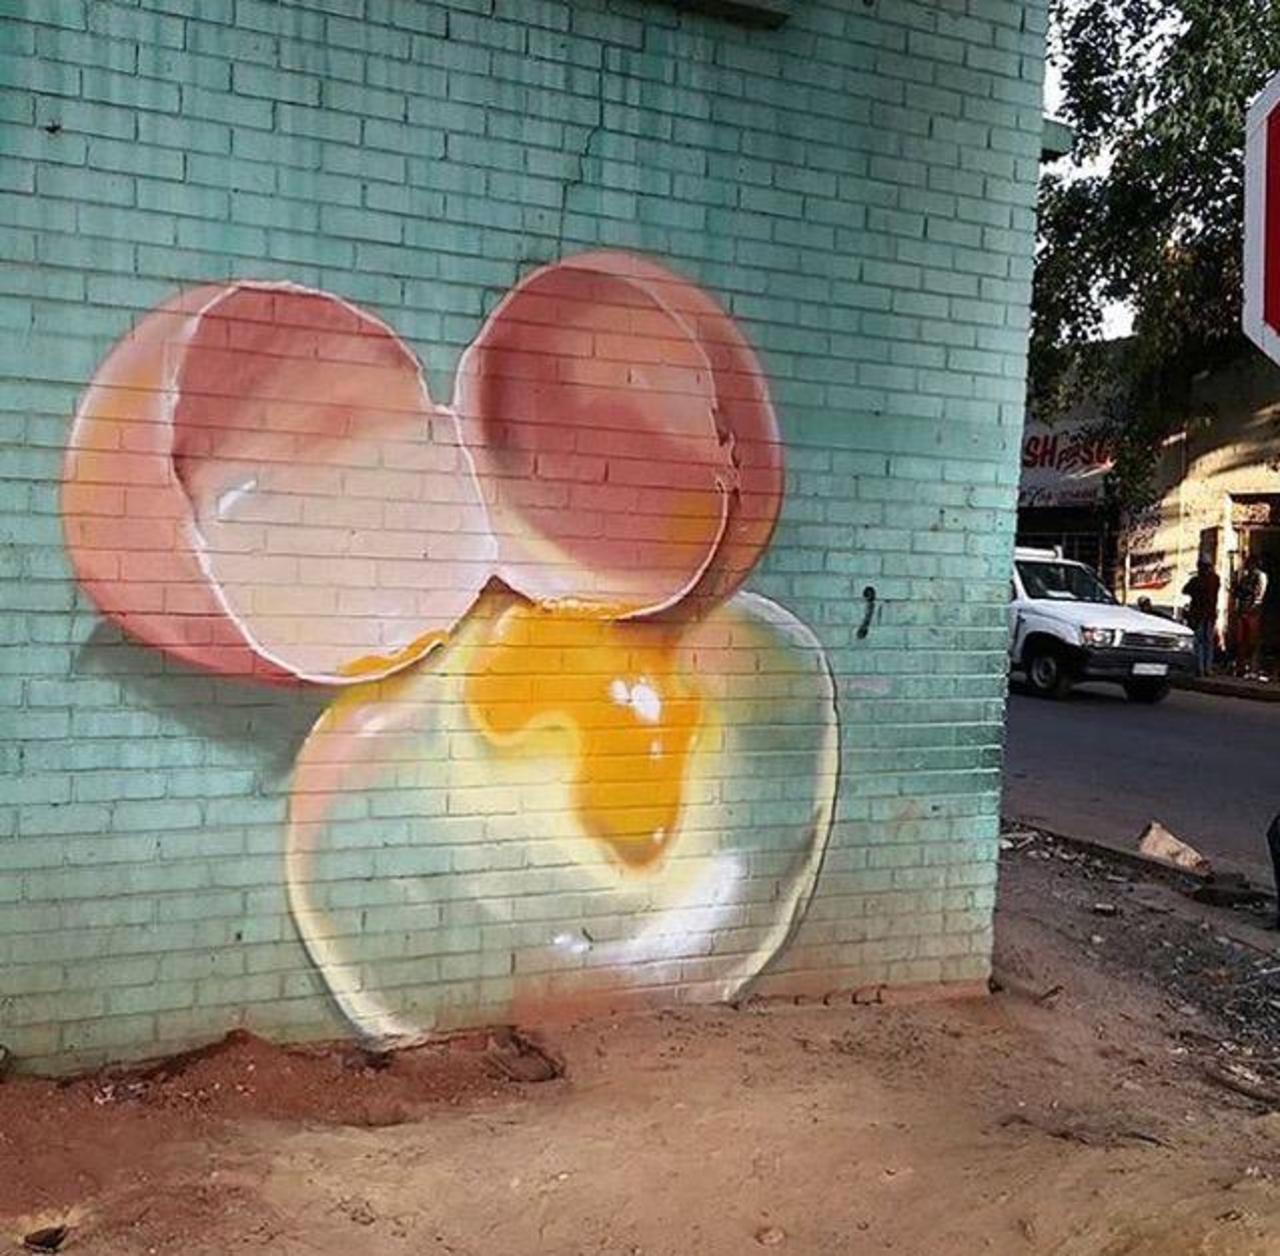 Street Art by falco1 in Johannesburg SA  

#art #graffiti #mural #streetart http://t.co/kz00LGNvdE